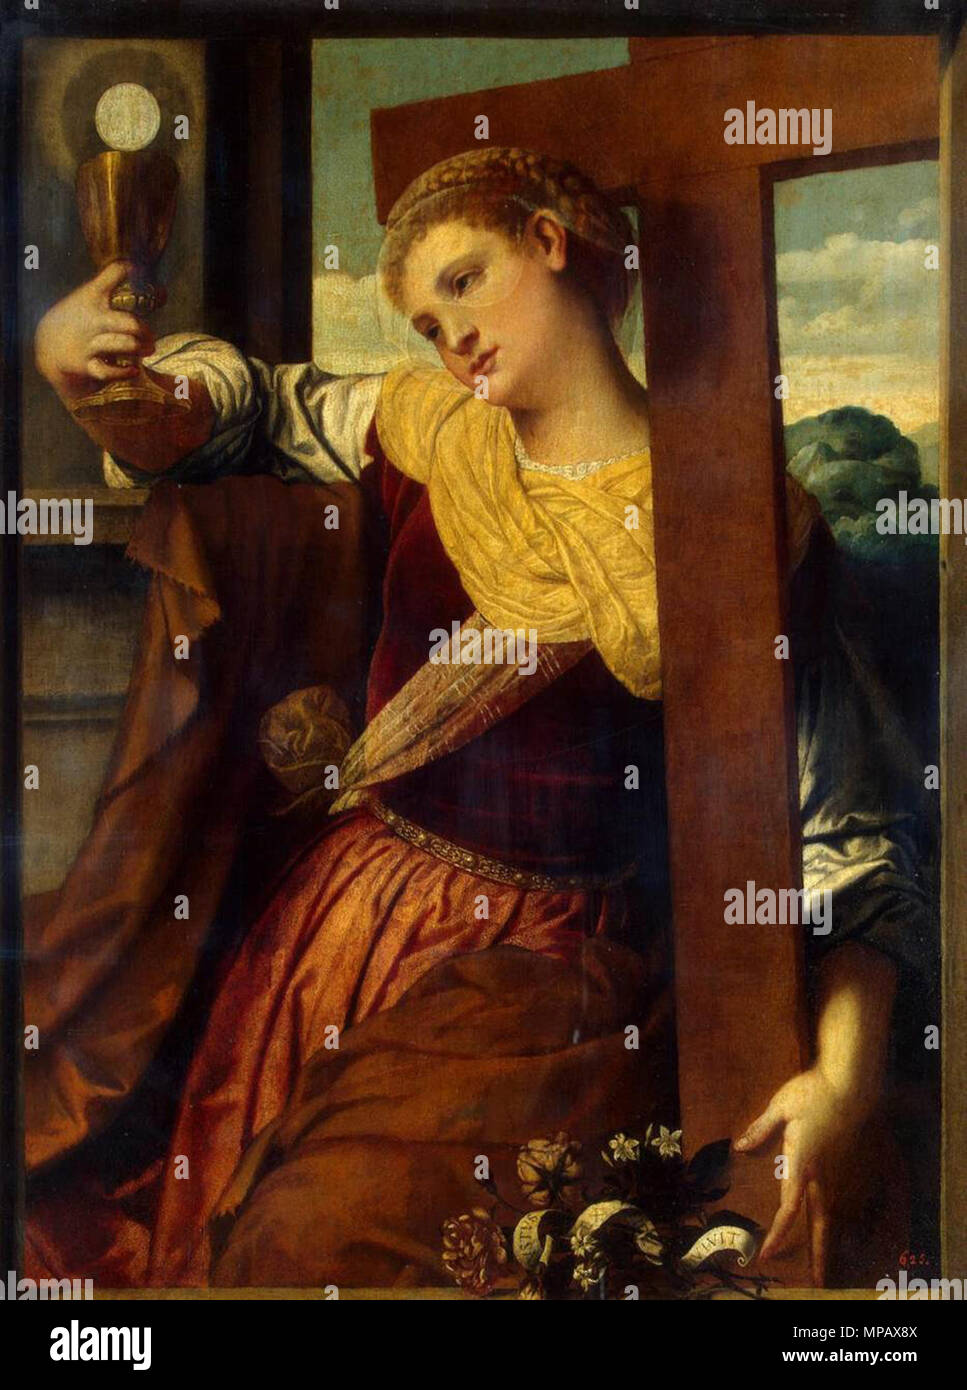 Allegory of Faith   circa 1540.   905 Moretto da Brescia - Allegory of Faith - WGA16215 Stock Photo